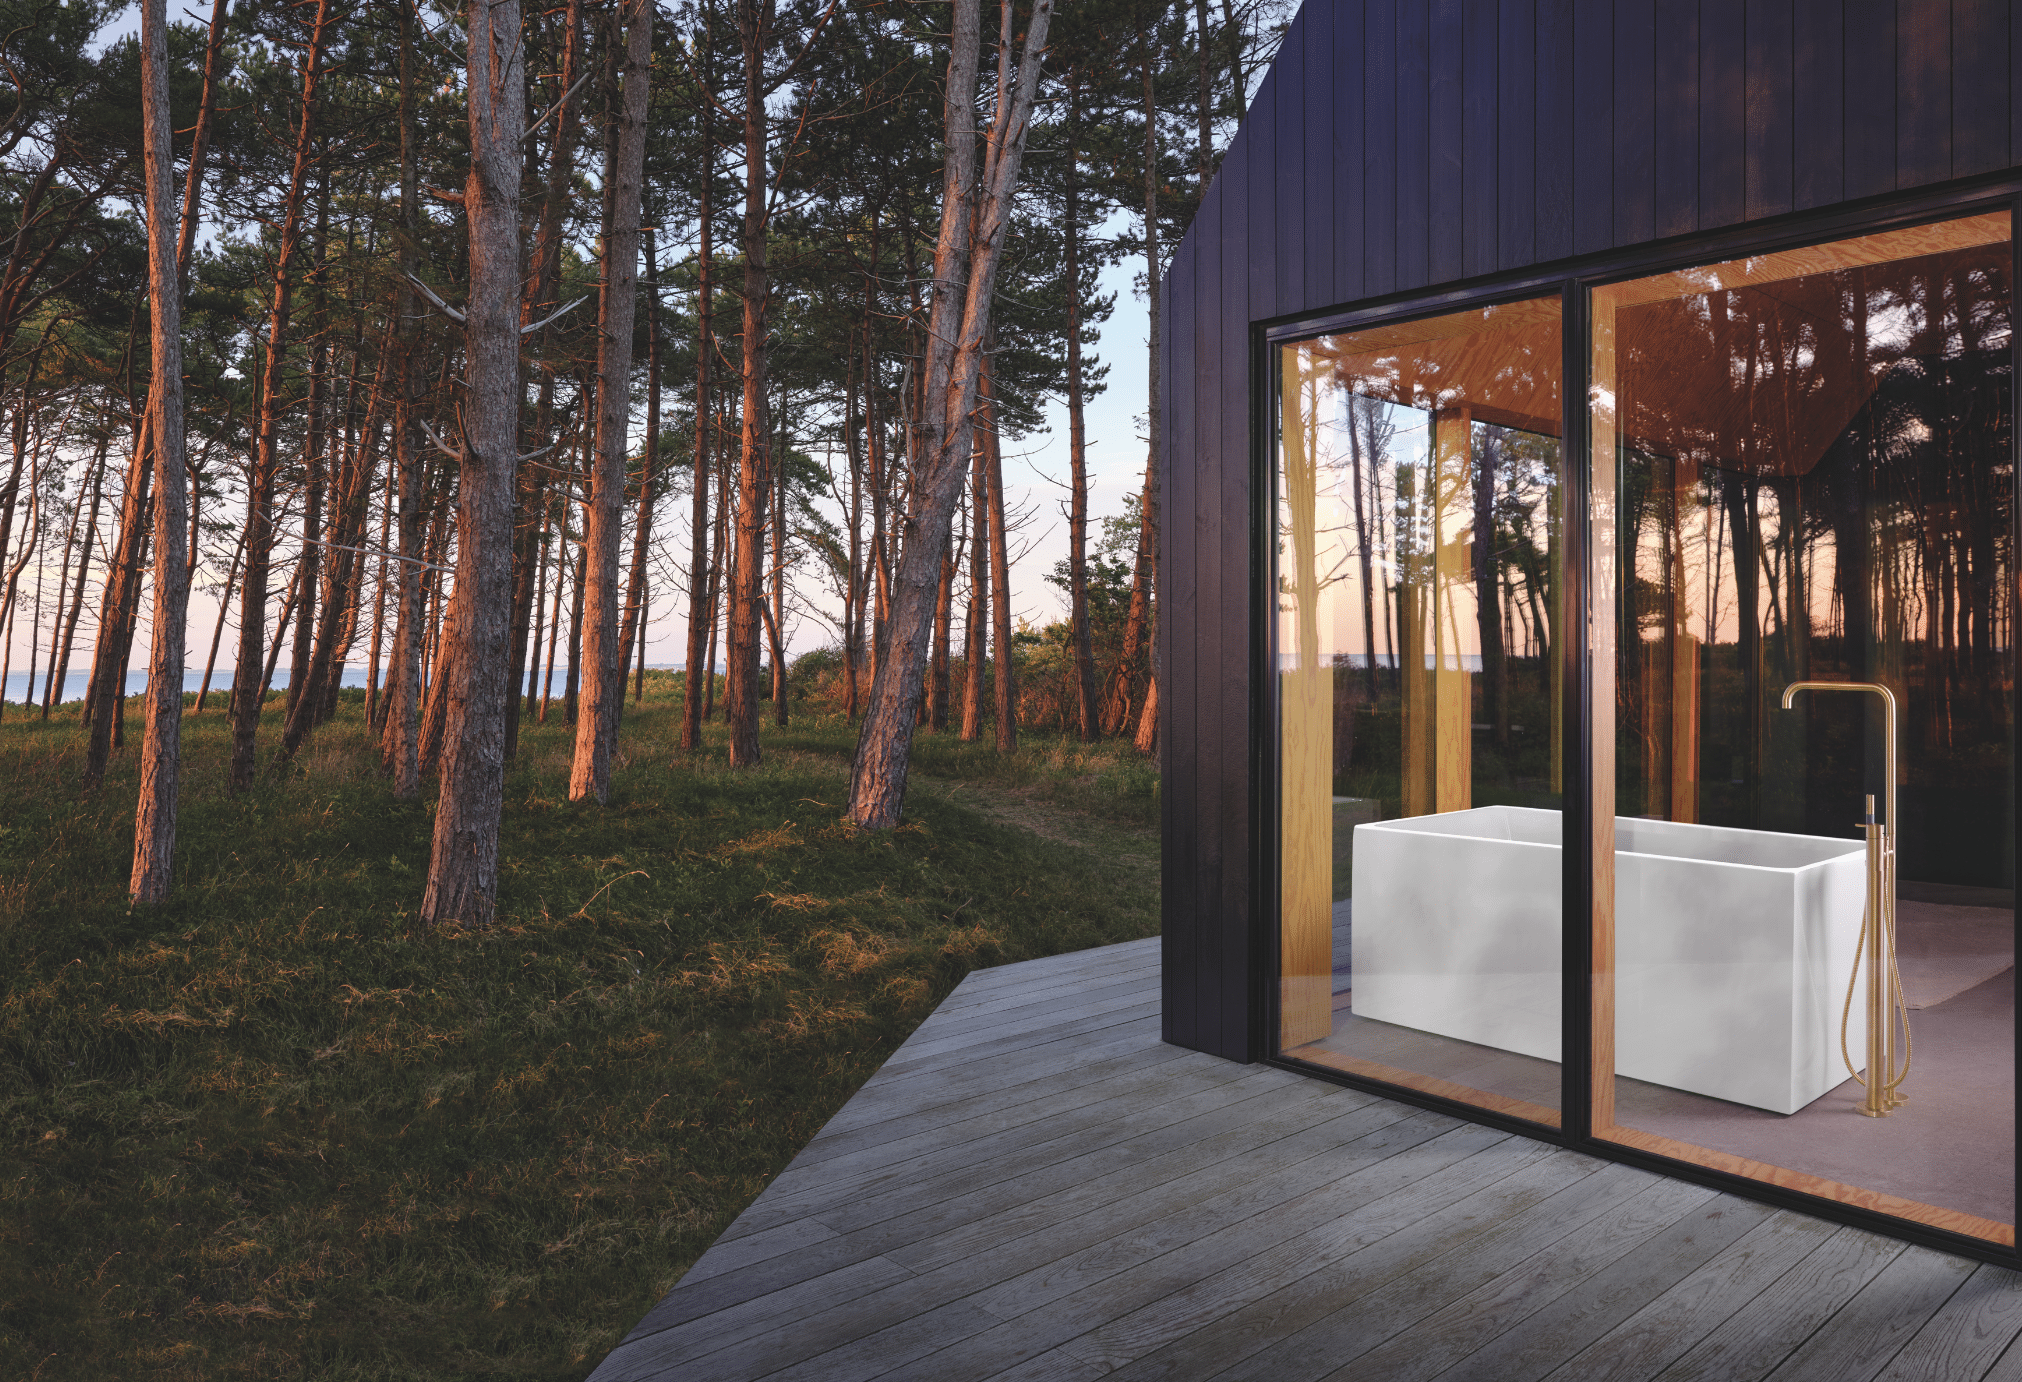 VOLA zeigt eine Waldhütte aus Holz mit großen Fenstern und einer freistehenden Badewanne mit goldenen Armaturen.